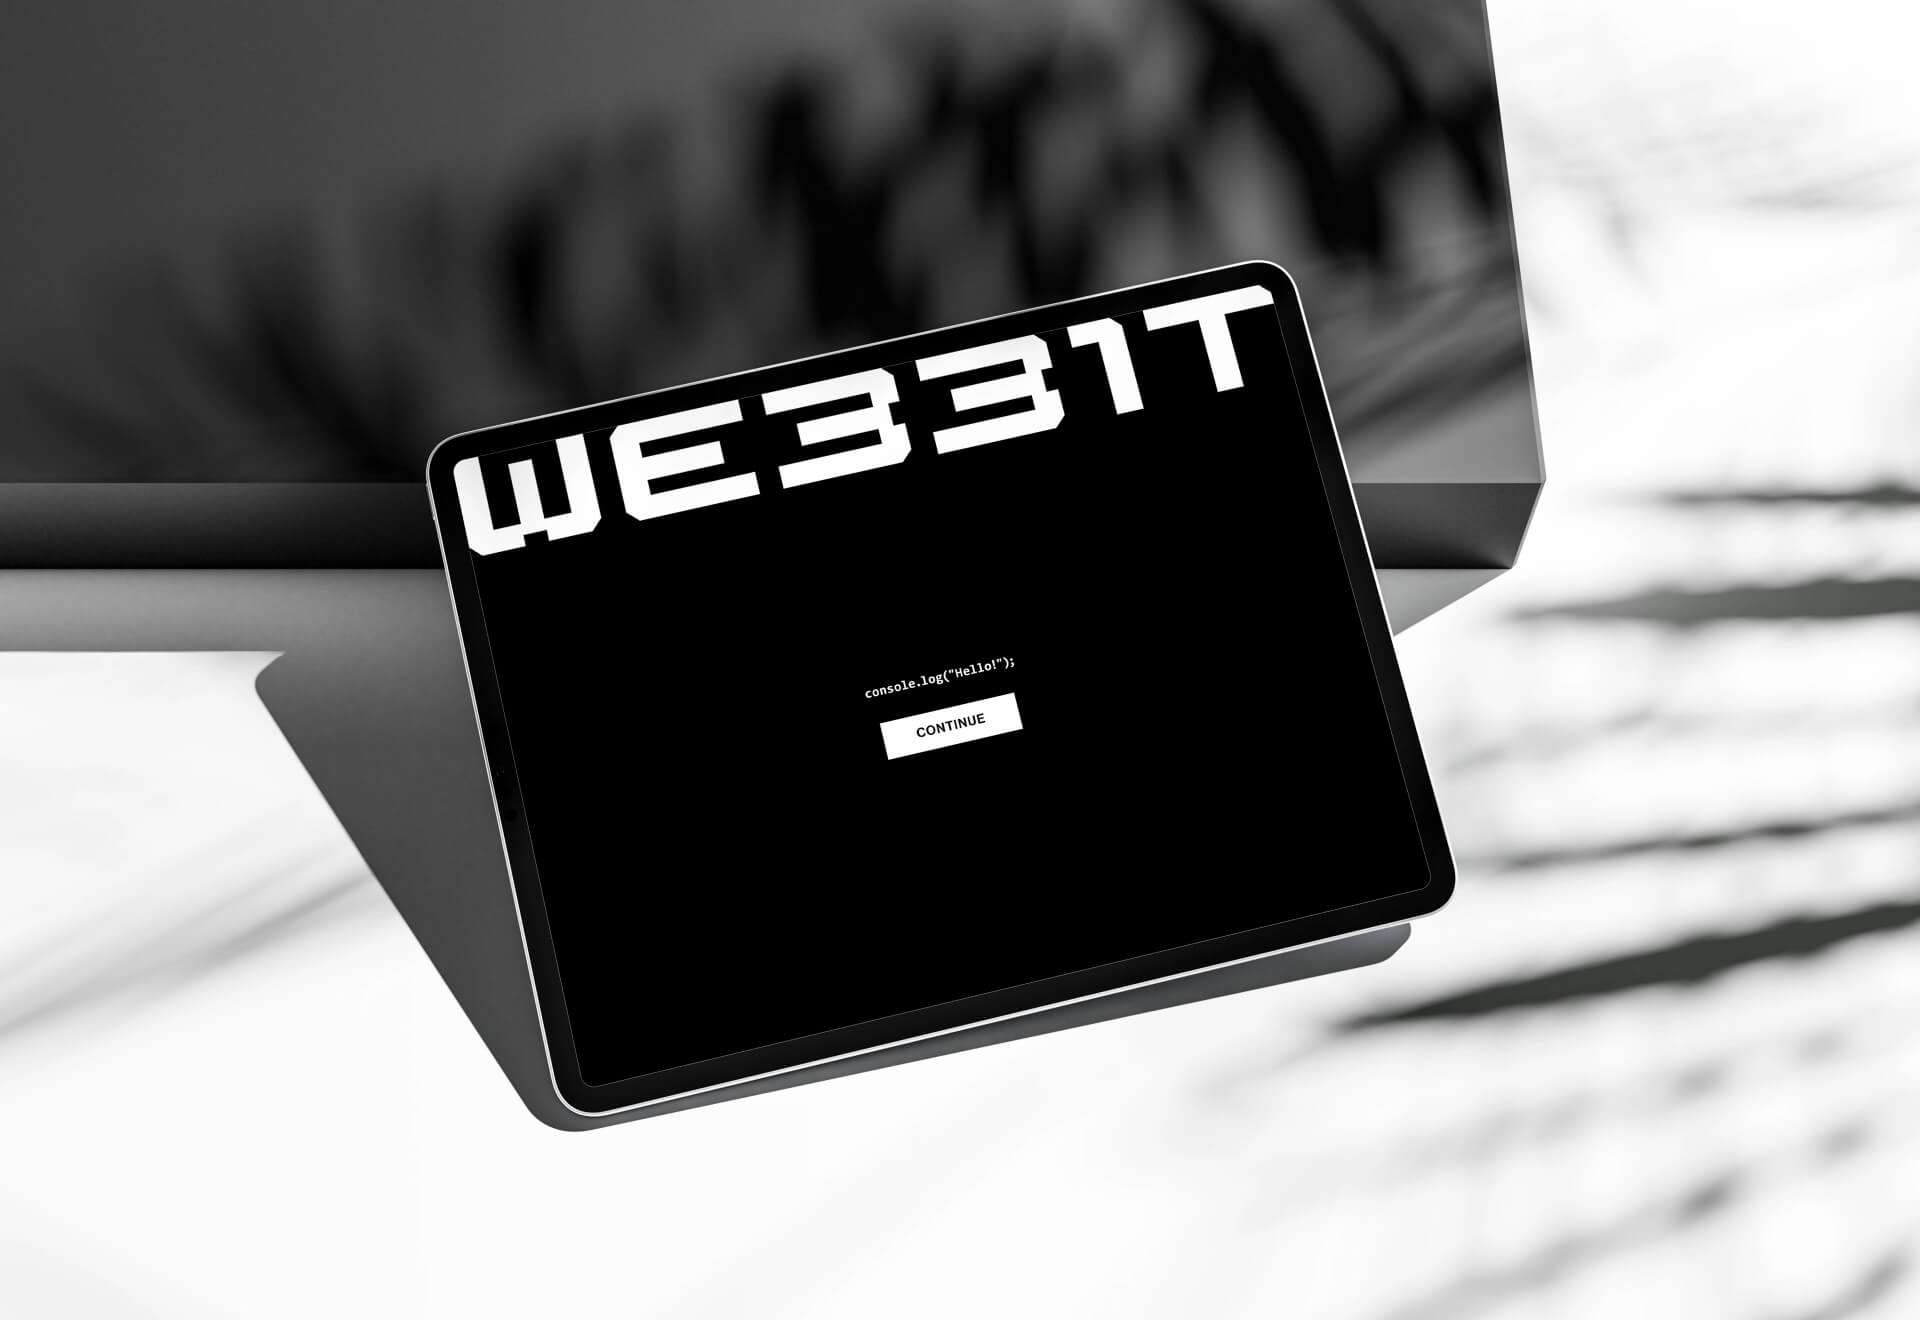 webbit-tablet